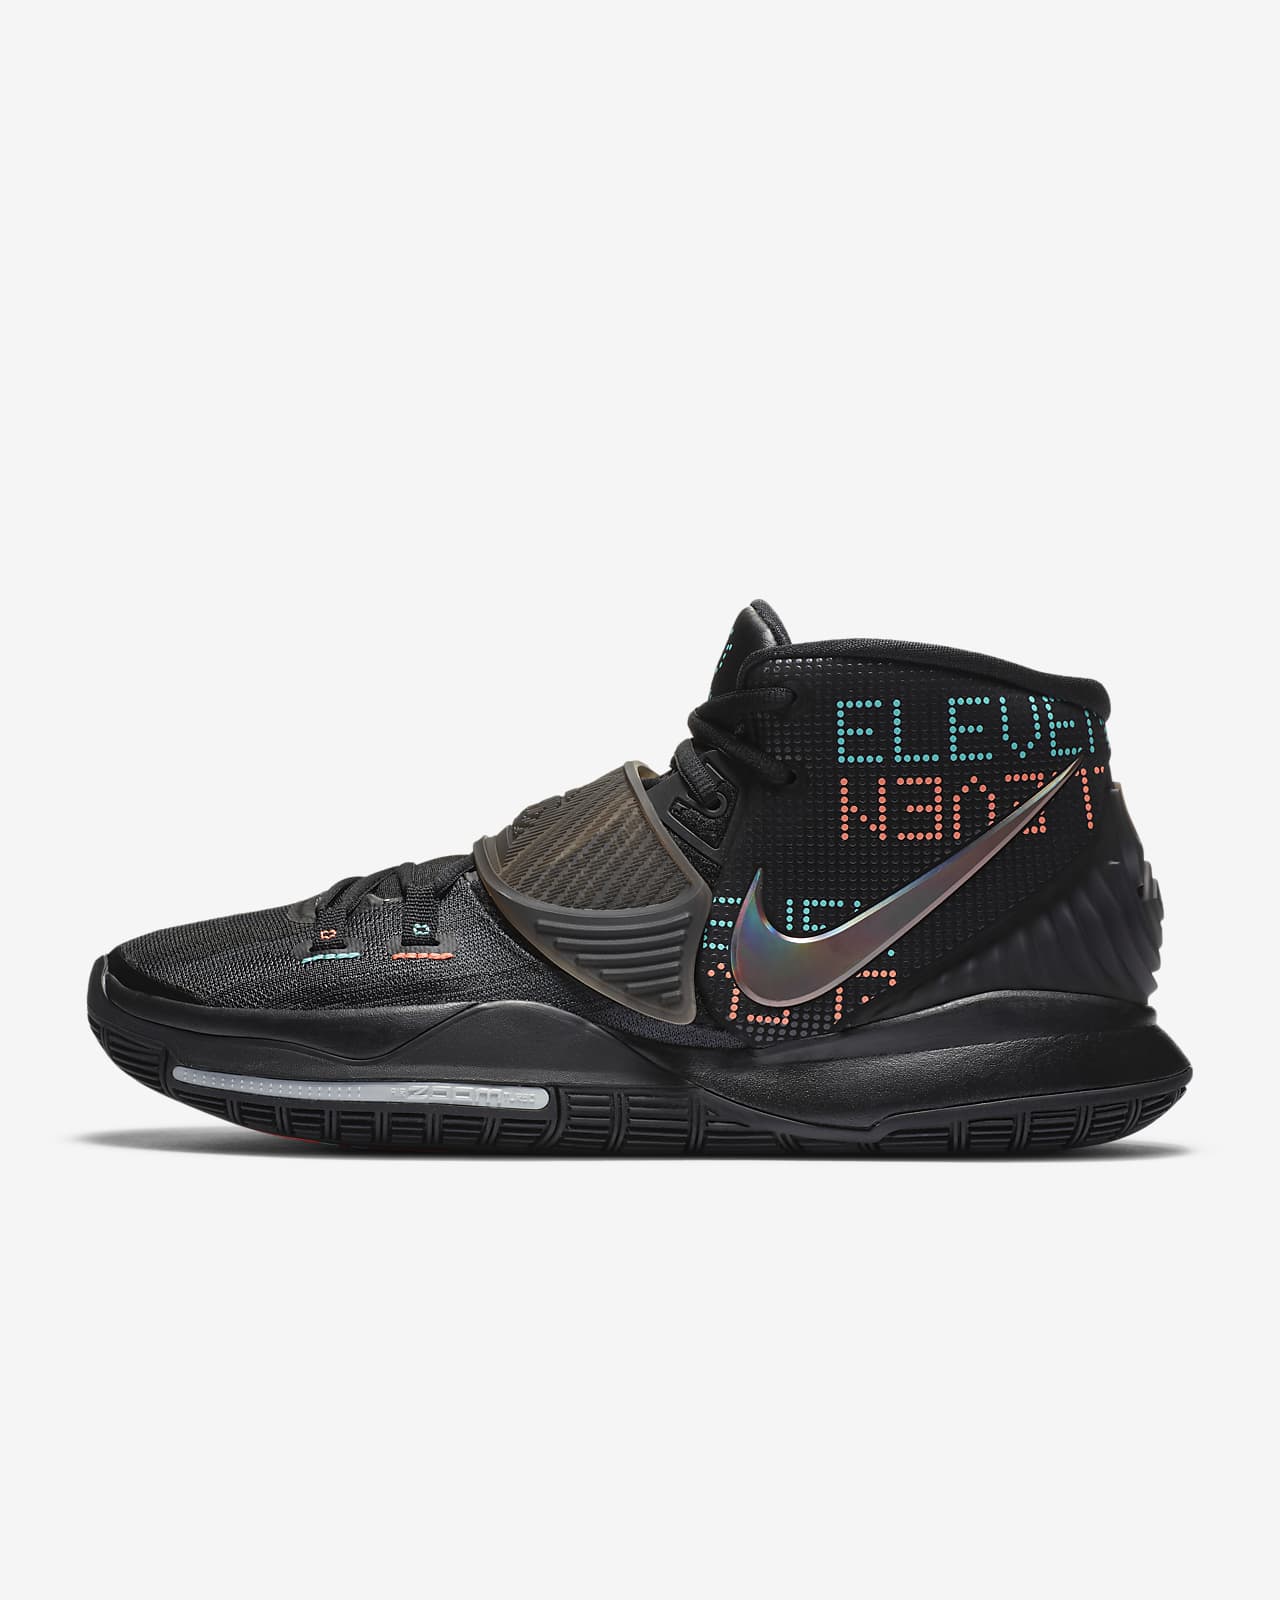 Kyrie 6 EP Basketball Shoe. Nike SG